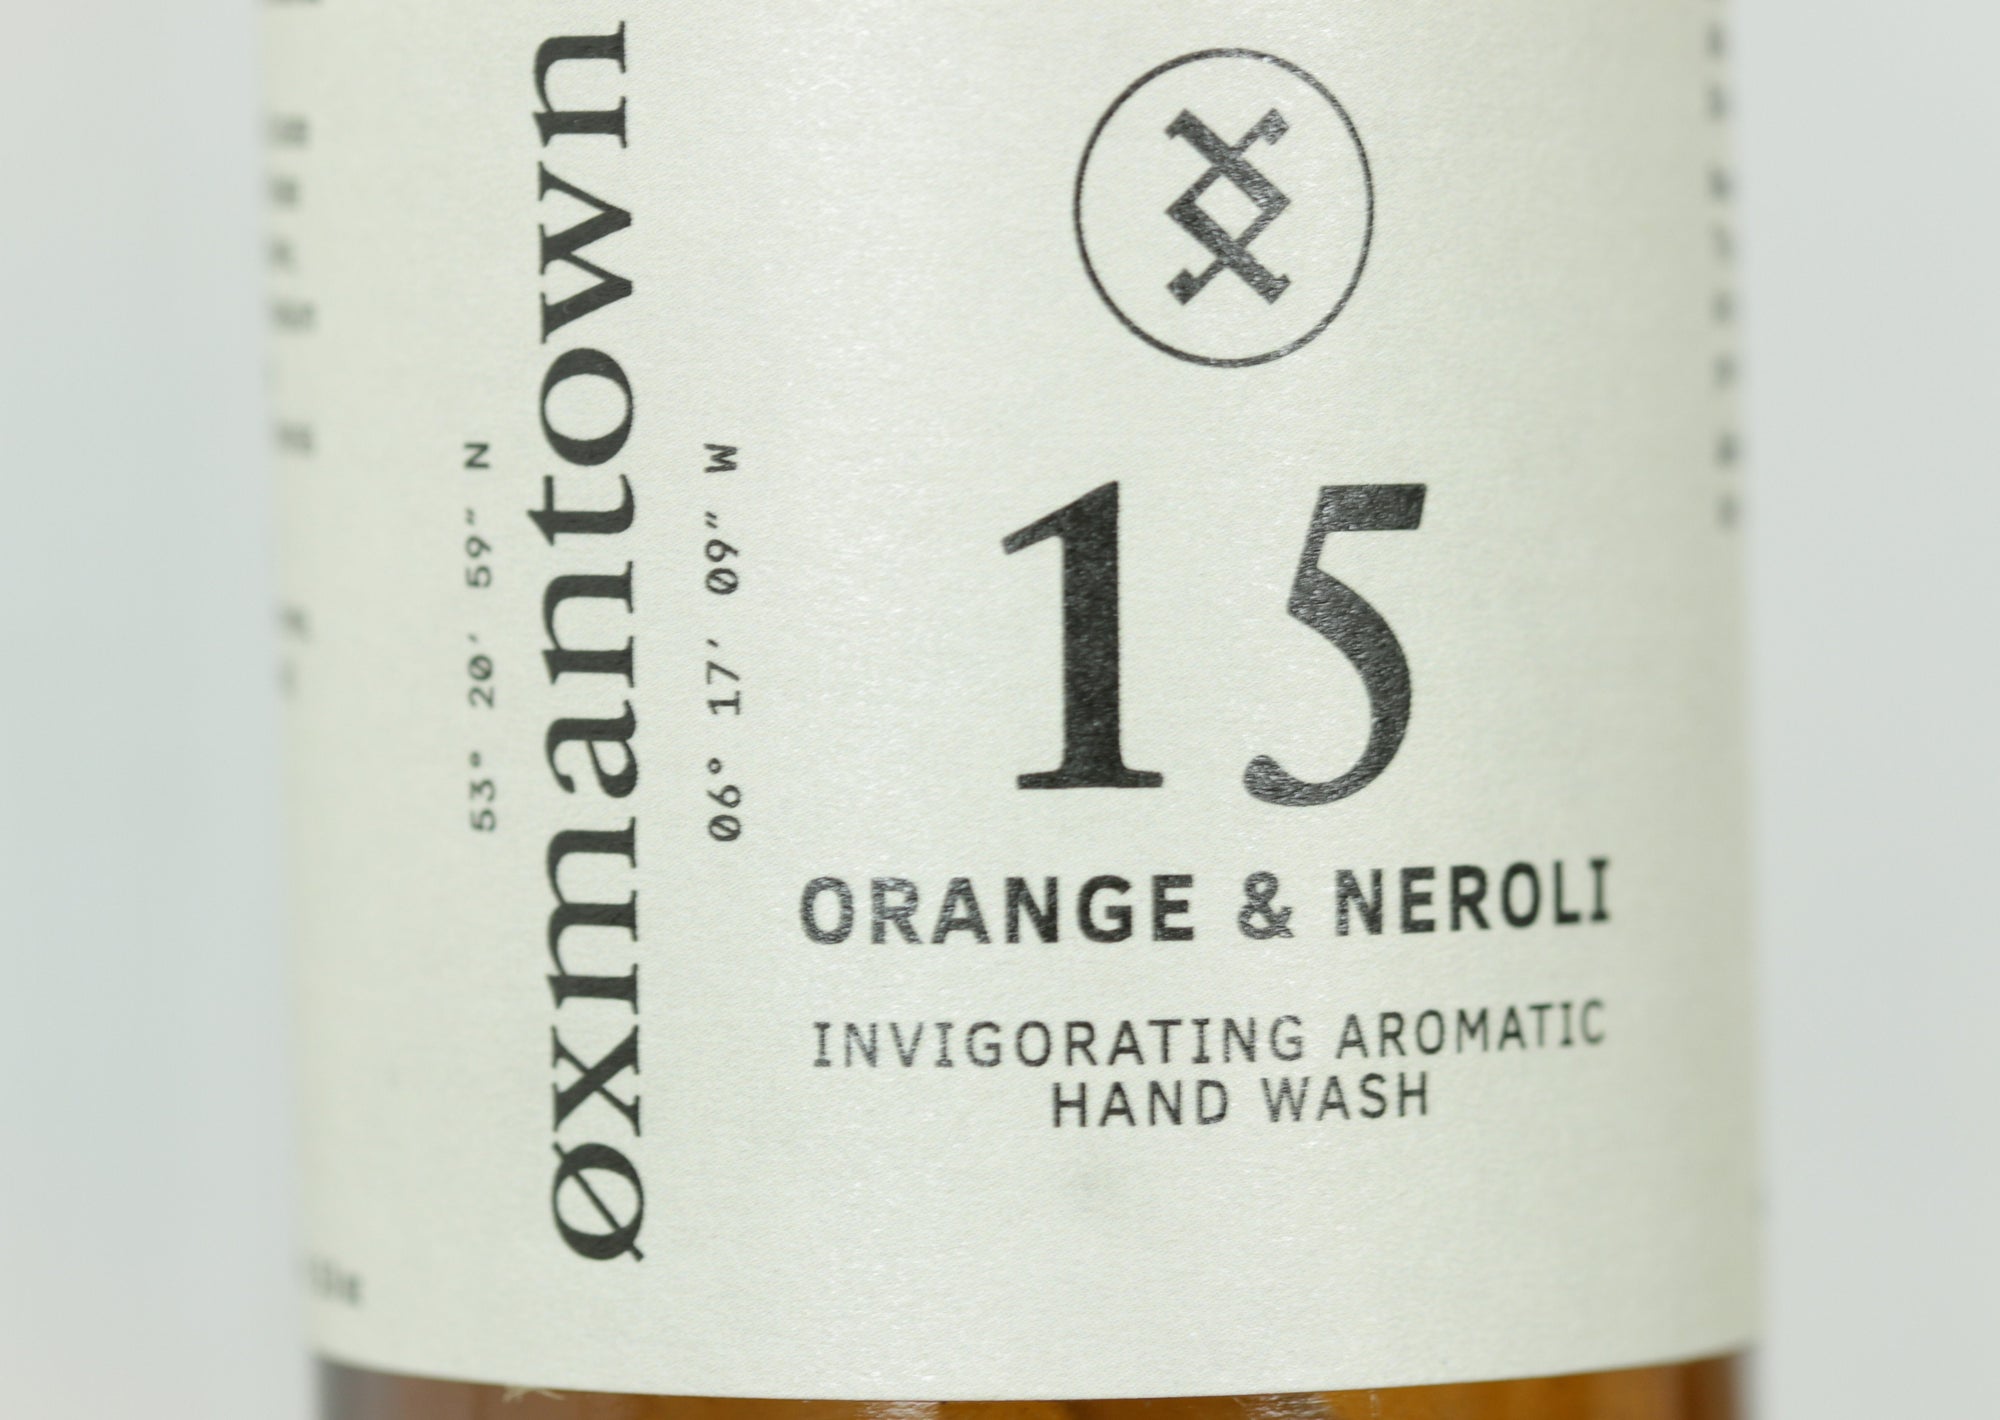 Orange & Neroli Hand Wash, Oxmanstown